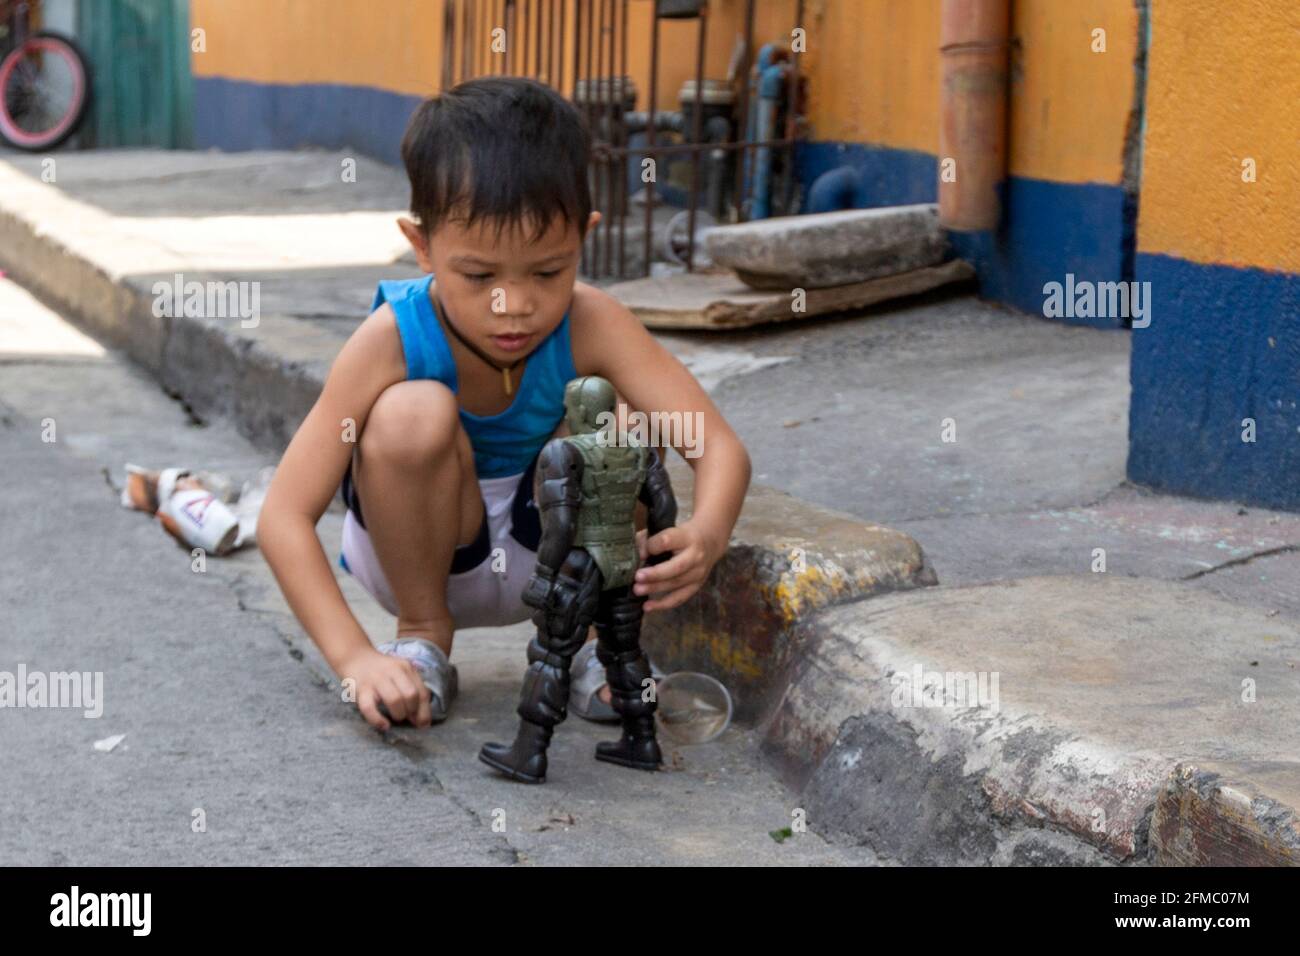 Garçon jouant avec le jouet dans la rue, quartier pauvre de Manille, Philippines Banque D'Images